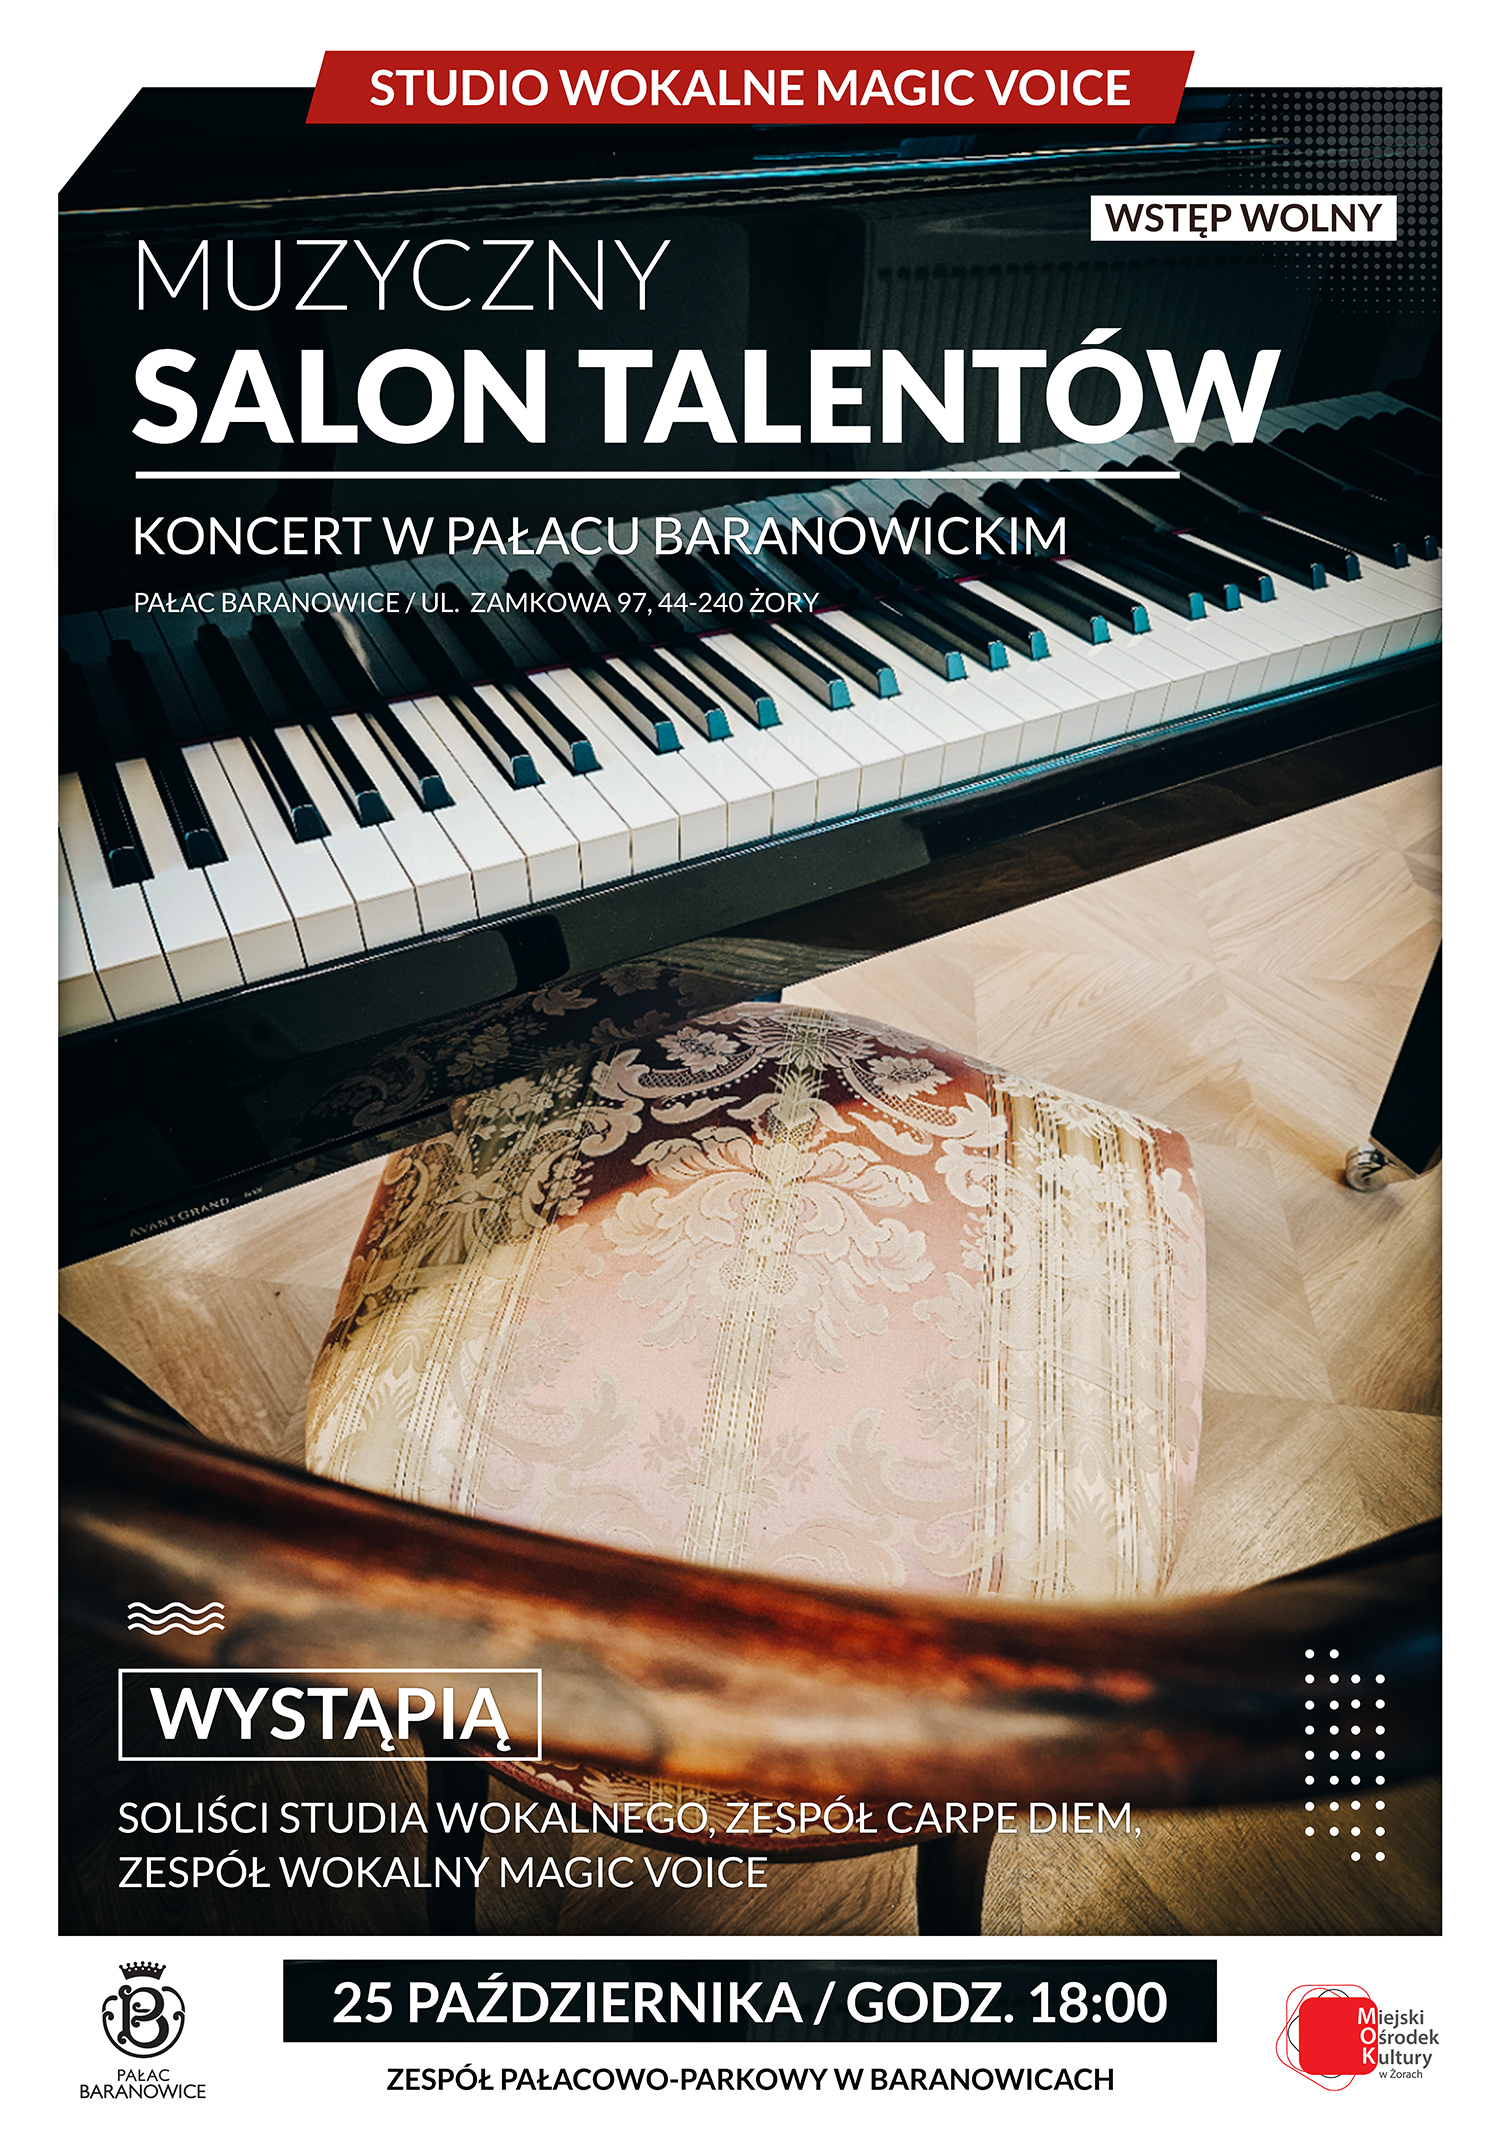 Plakat ze zdjęciem klawiatury fortepianu oraz wyściełanym krzesłem w wzór z ornamentem. Na zdjęciu informacje tekstowe.